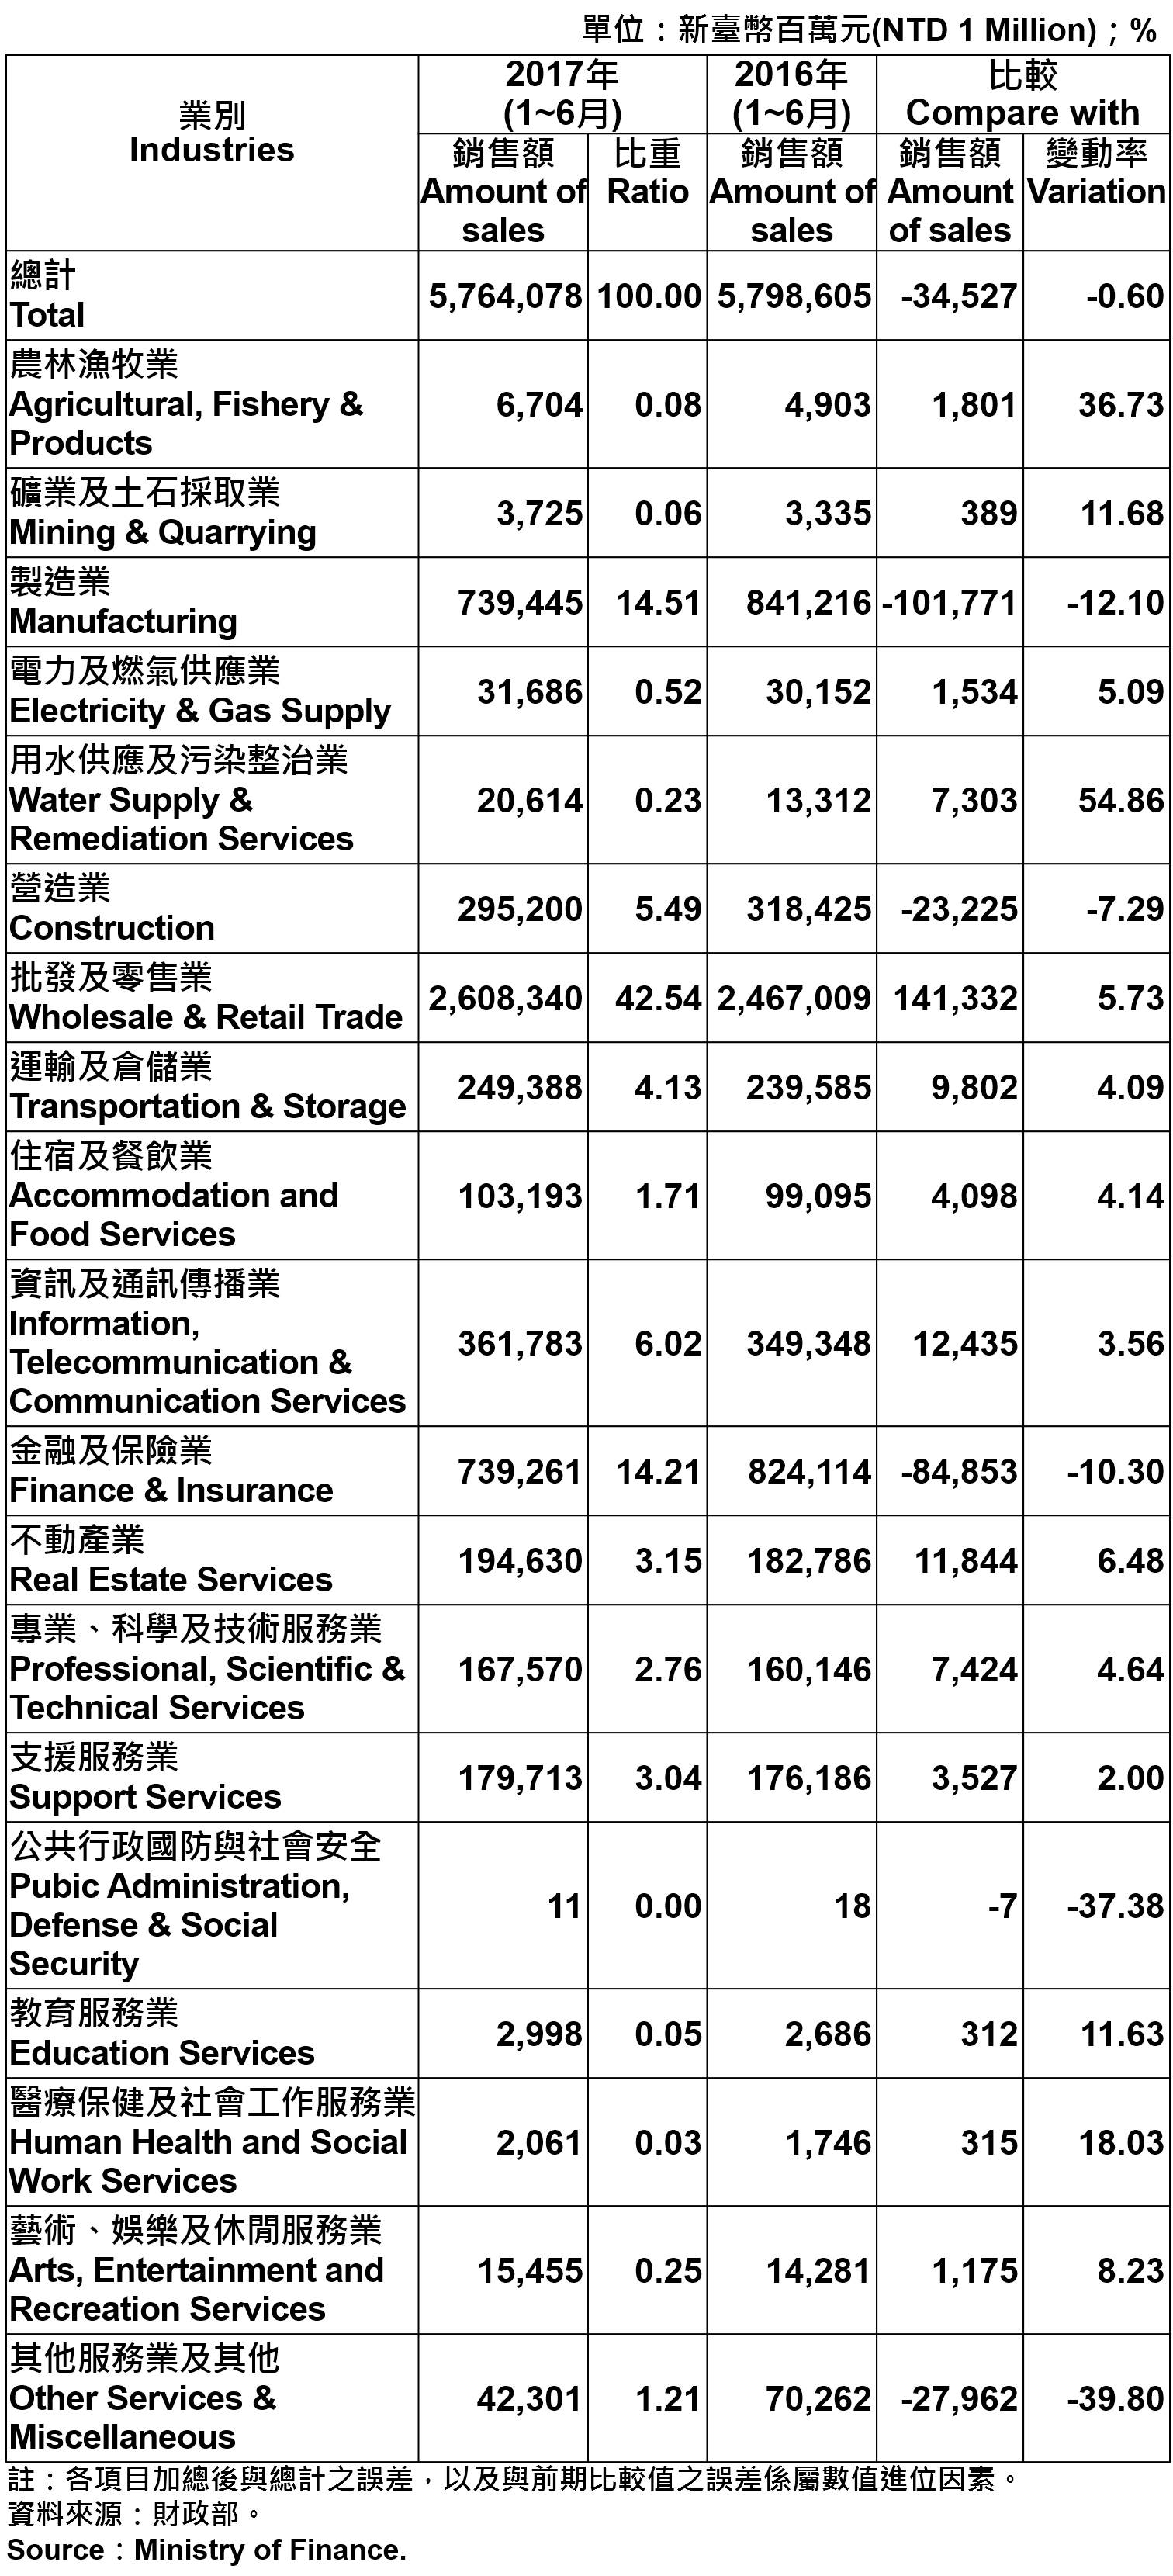 表5、臺北市各產業公司行號銷售額—2017Q2 Operating Income for Business Enterprises in Taipei City—2017Q2